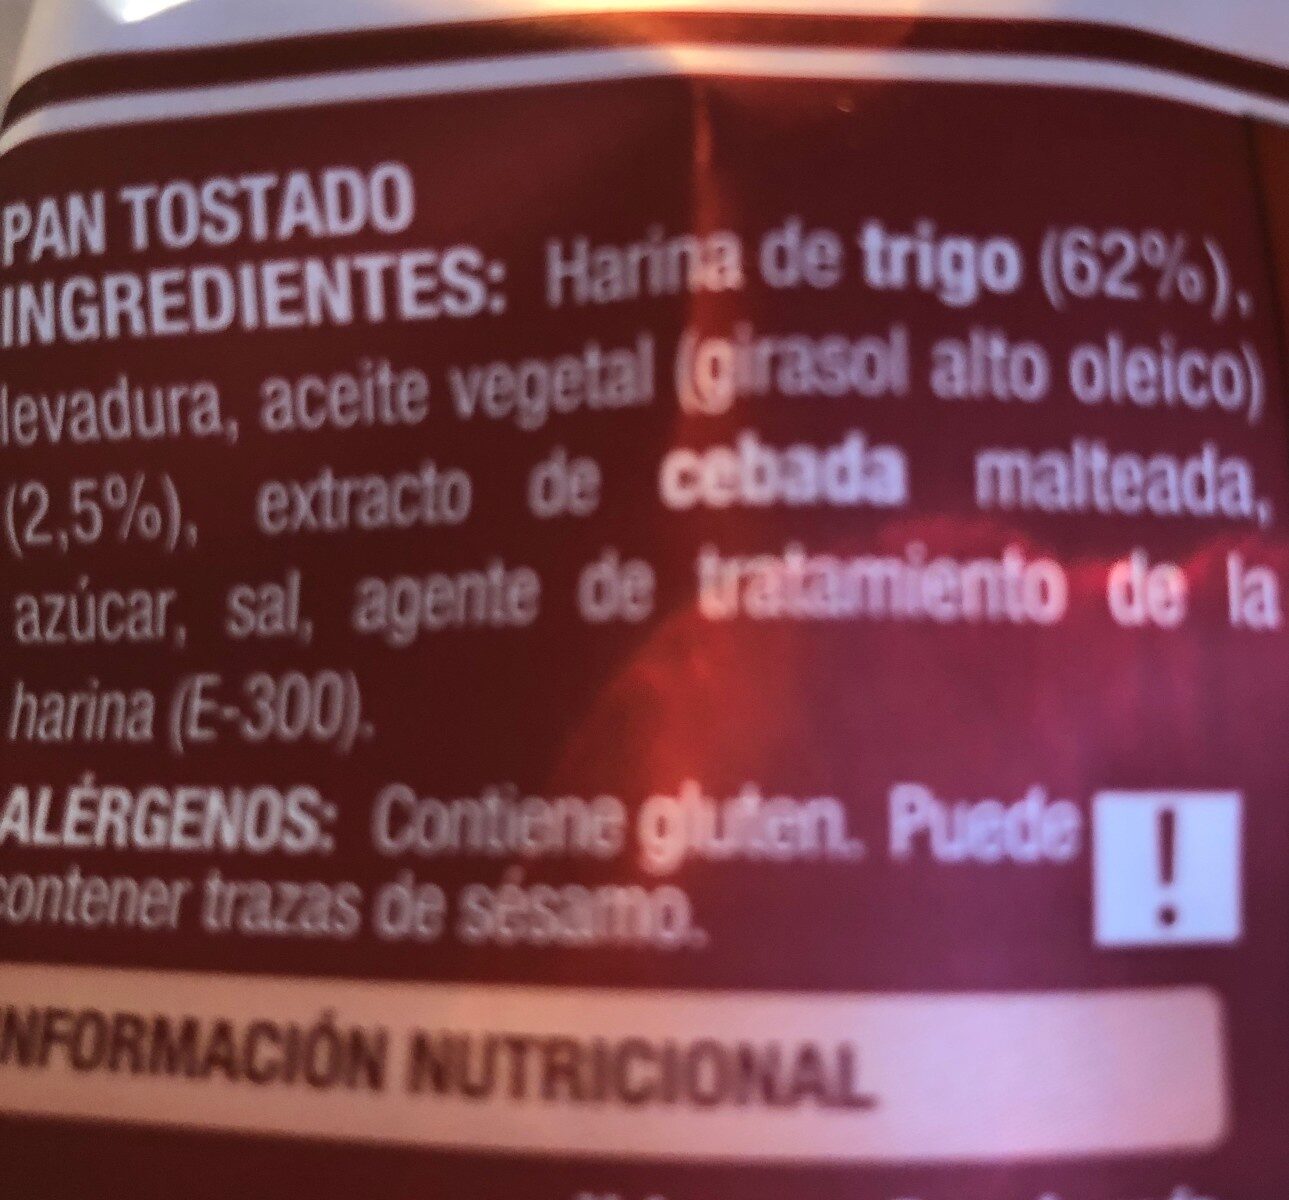 Pan tostado - Ingredients - es